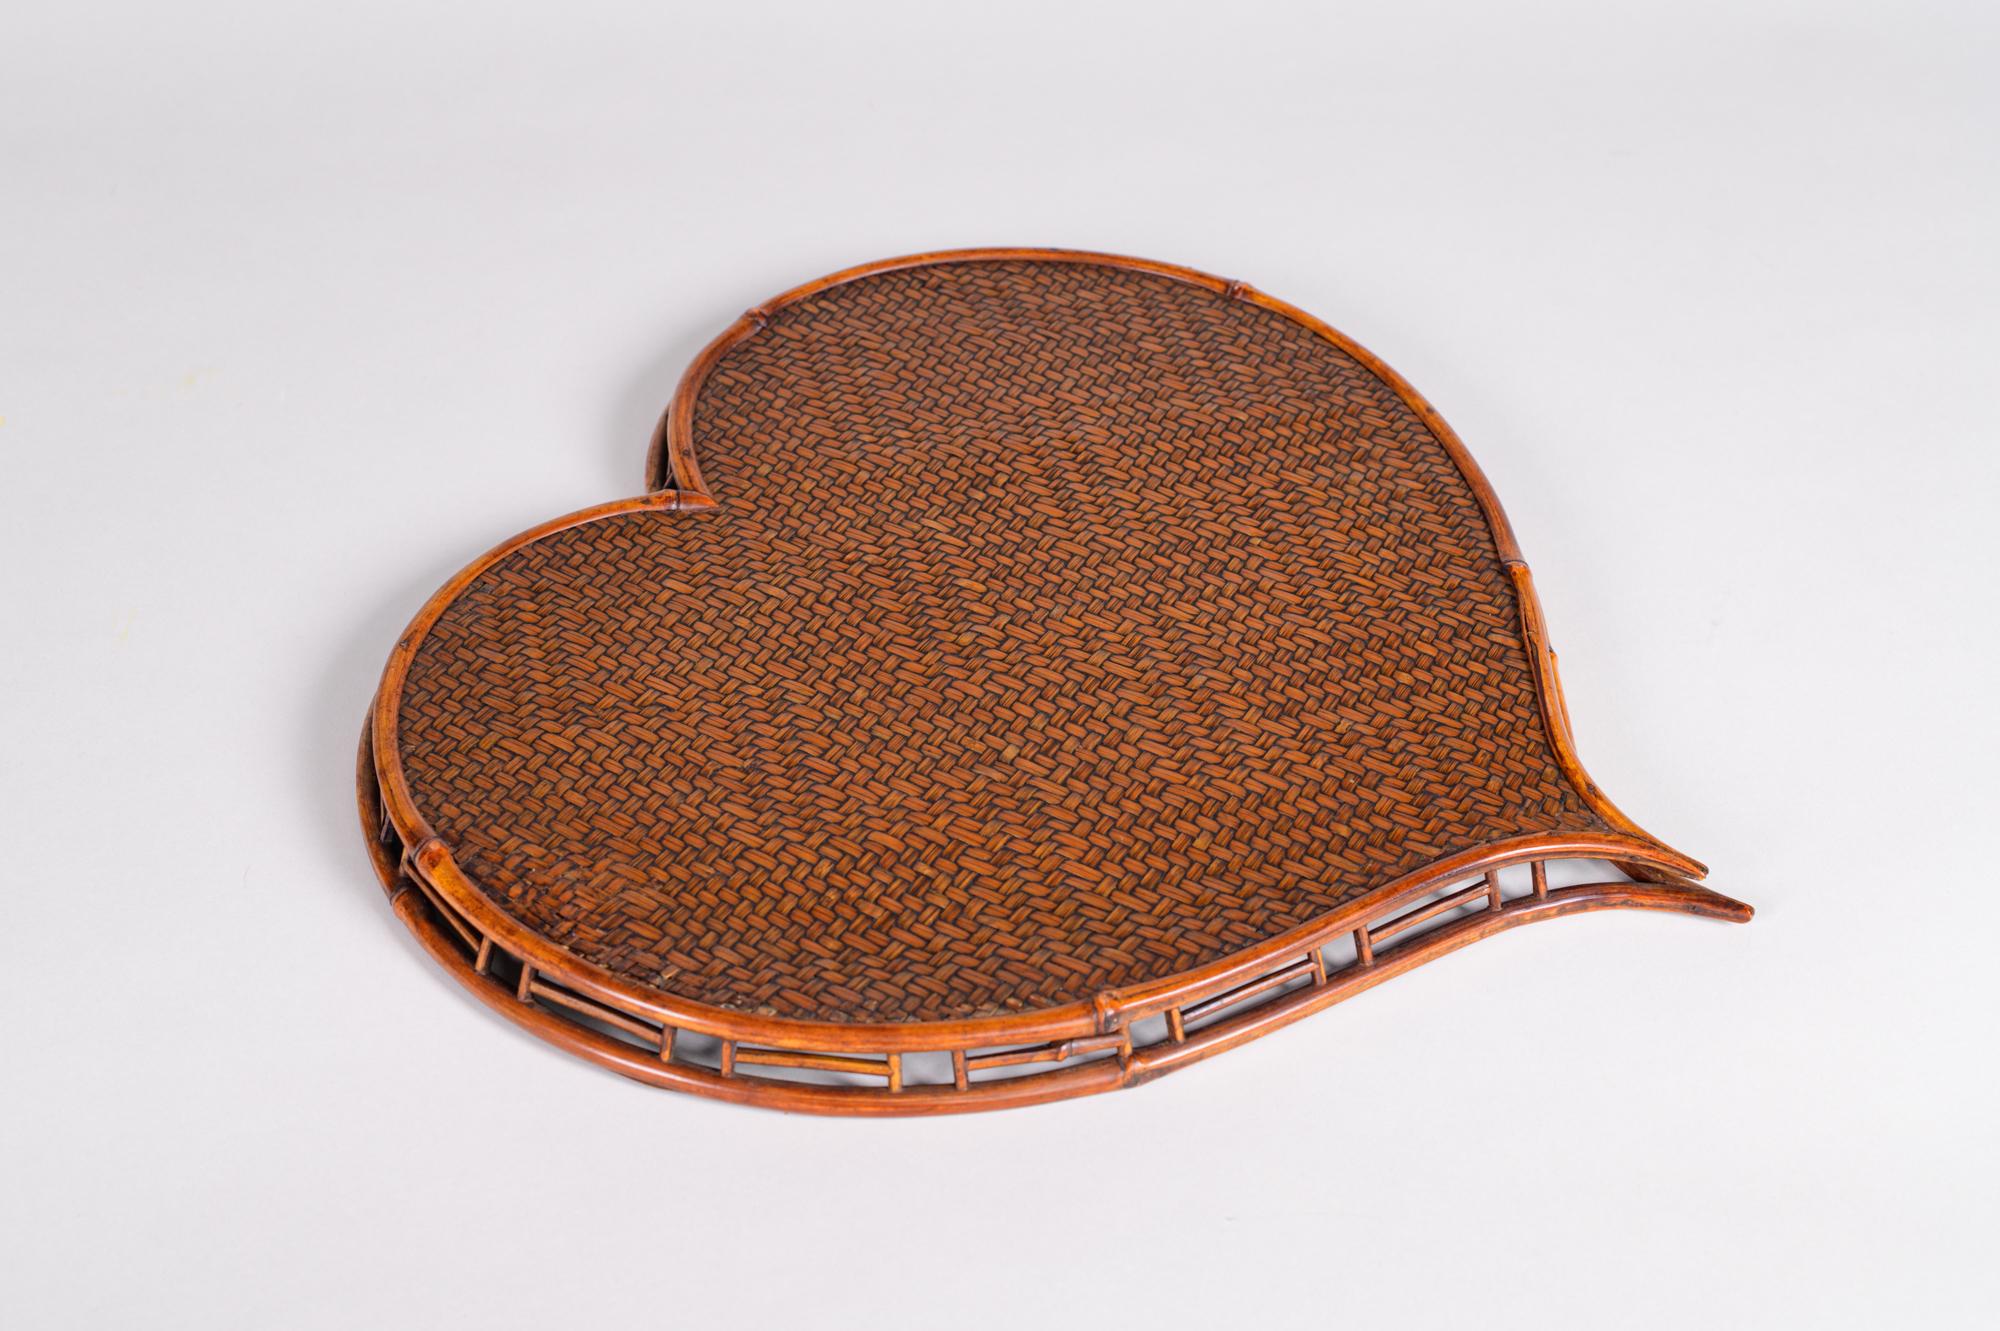 Herzförmiges Tablett aus Rattan und Bambus. Gewebtes Tablett aus der Meiji-Periode (1868-1912) in einer für ein Tablett sehr ungewöhnlichen Form. Schöne Patina.